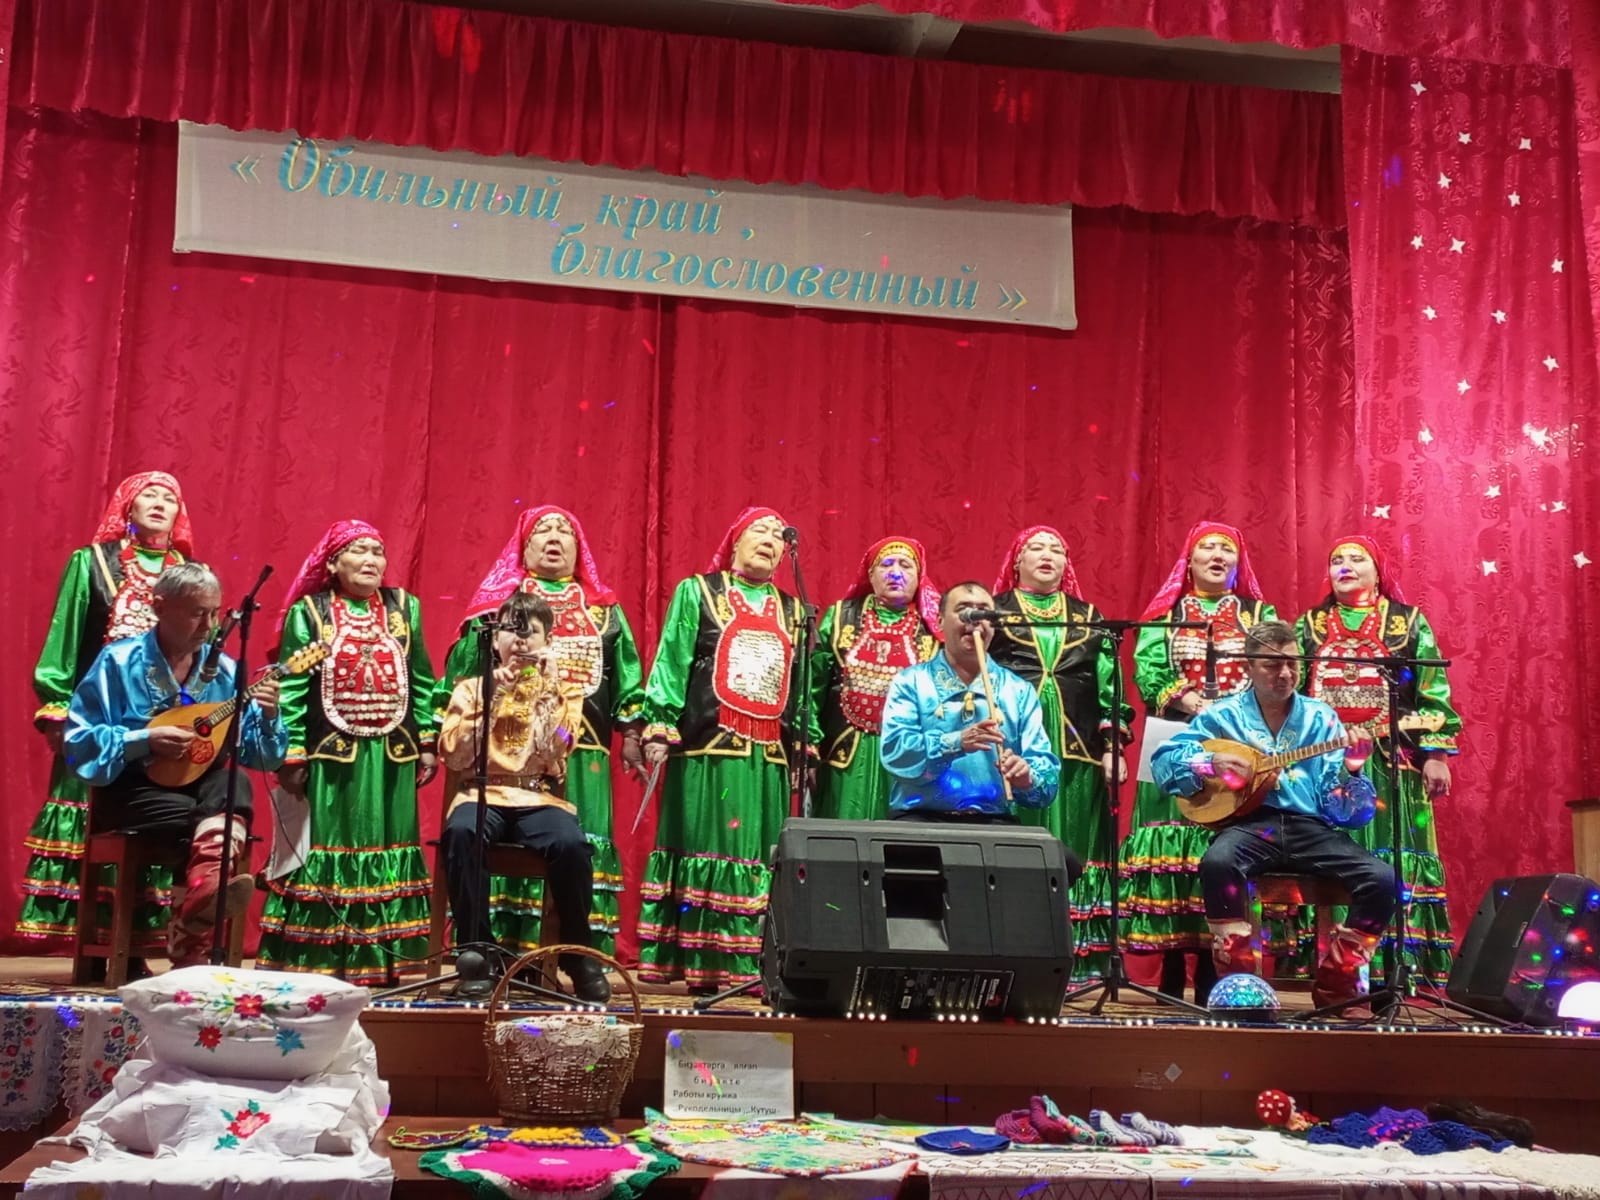 В Оренбуржье стартовал районный этап областного конкурса «Обильный край, благословенный!»